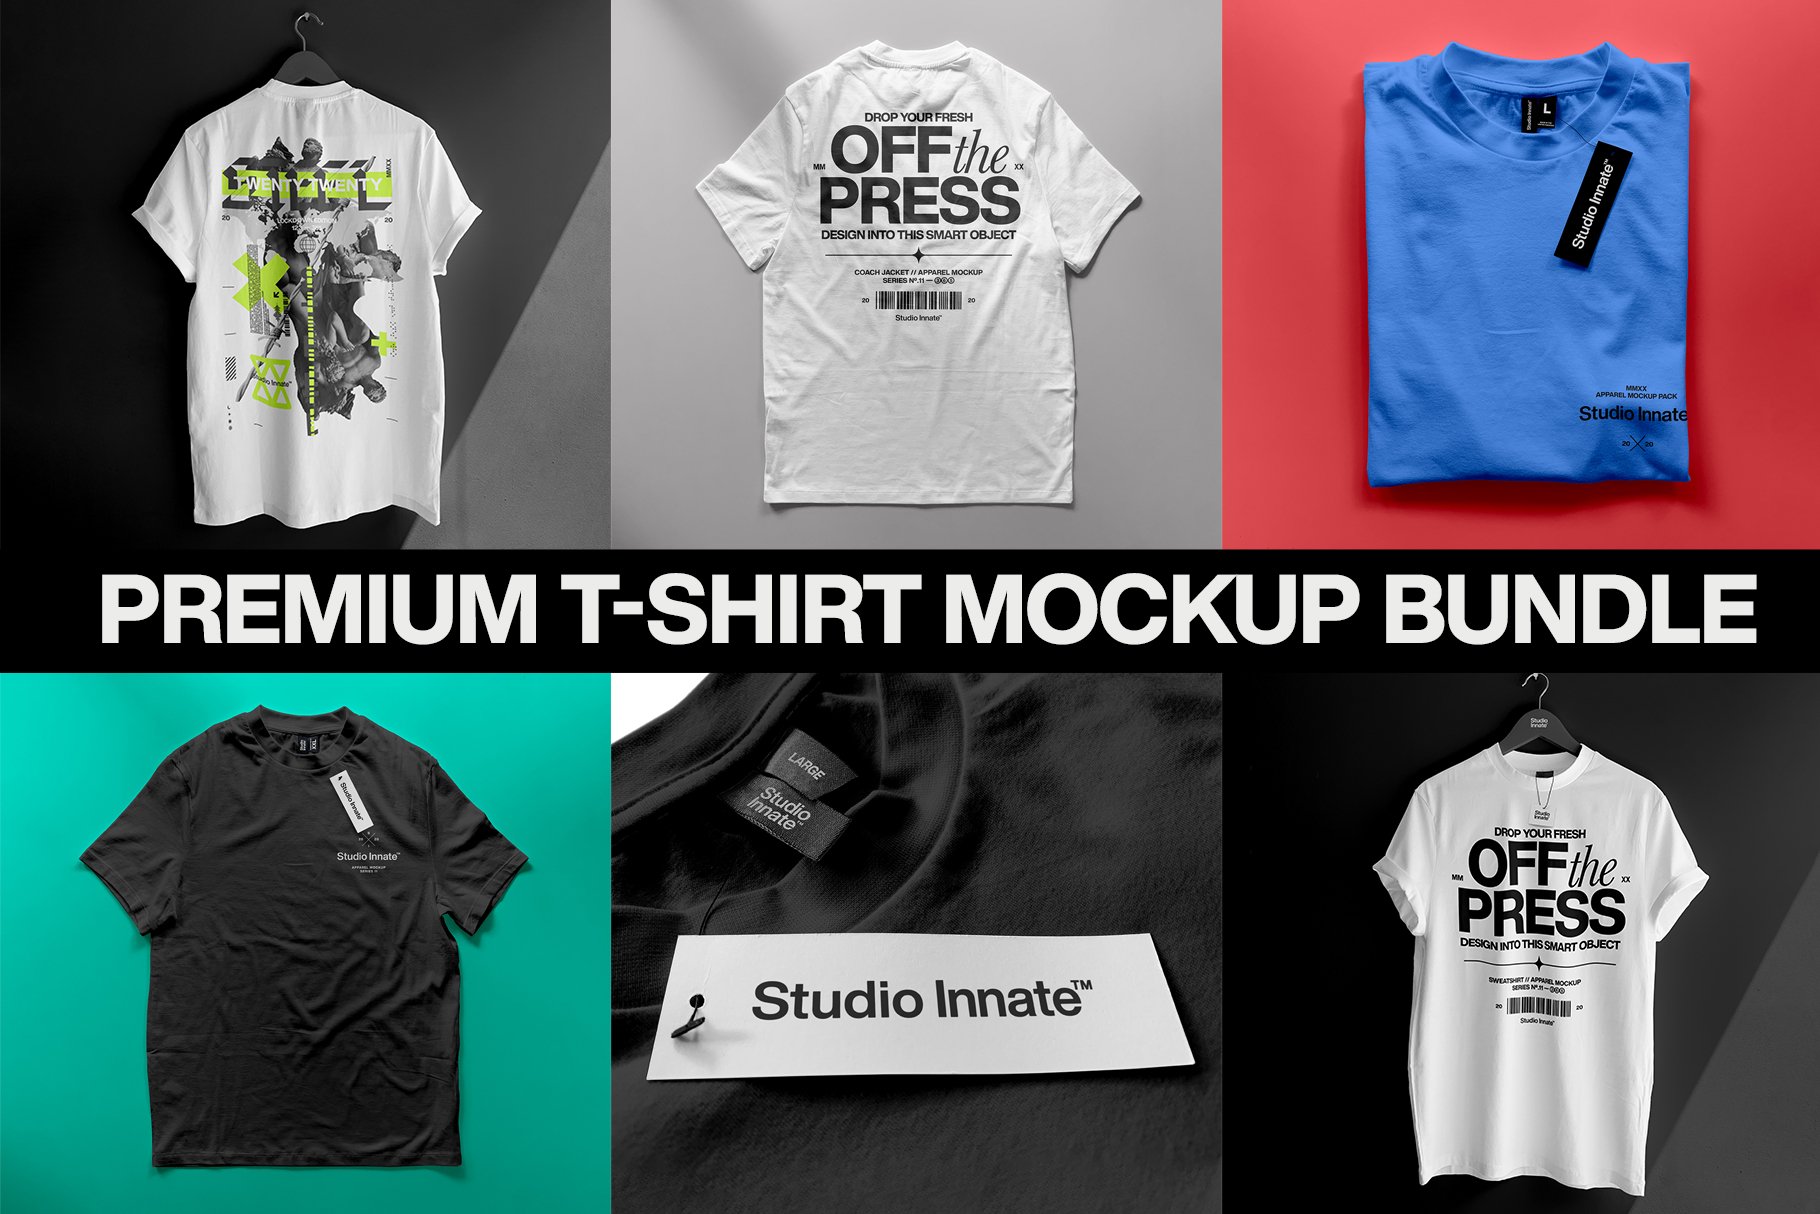 Premium Apparel Mockups Bundle, T-Shirt Mockups